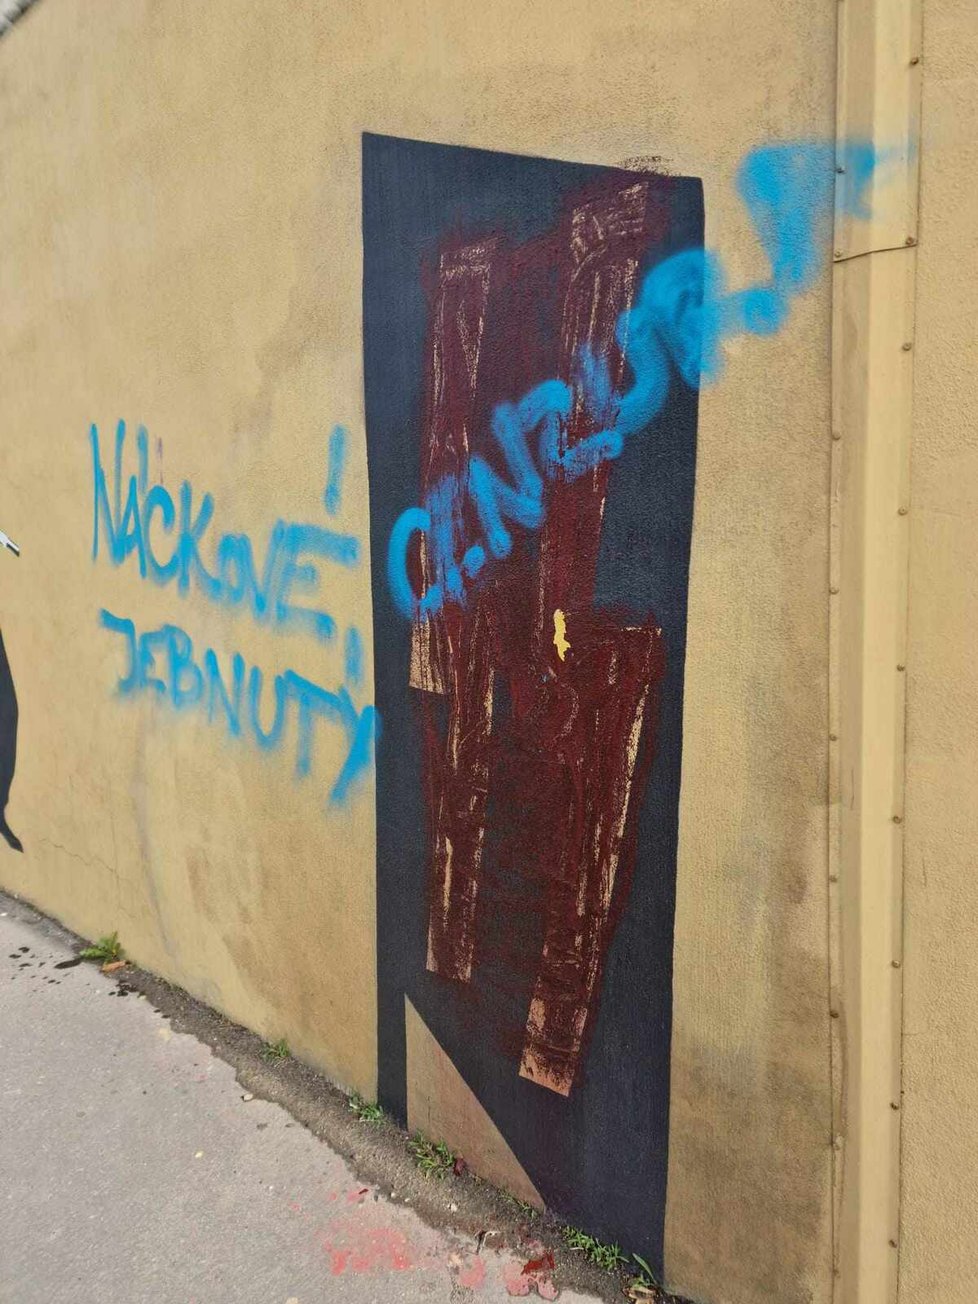 Praha 8 dala opravit murál Operace Anthropoid, který opakovaně poškozuje neznámý vandal